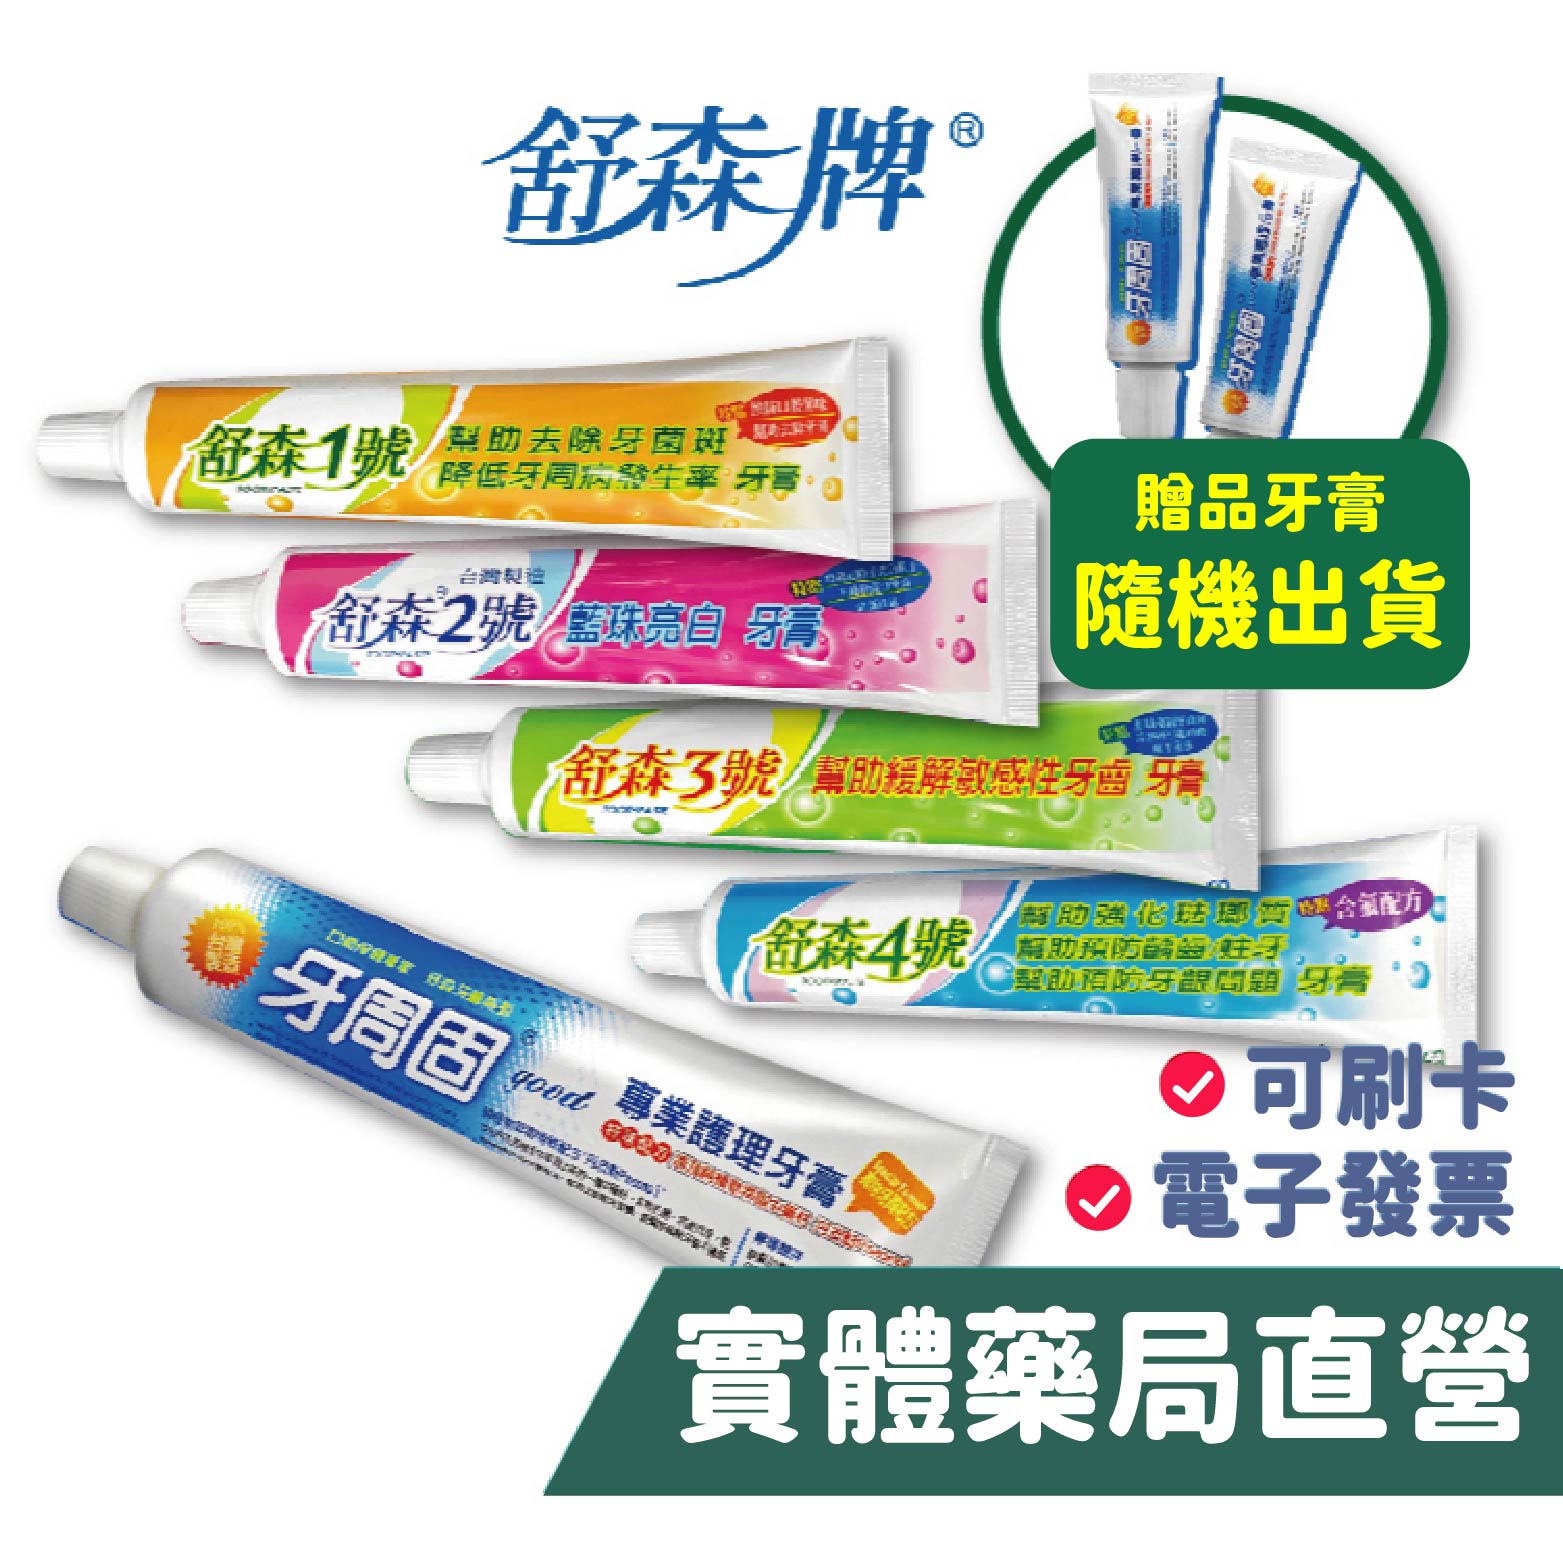 [禾坊藥局] 舒森 牙周固 全方位護理牙膏 1號/2號/3號/4號(附牙刷) 買1送2 台灣製造